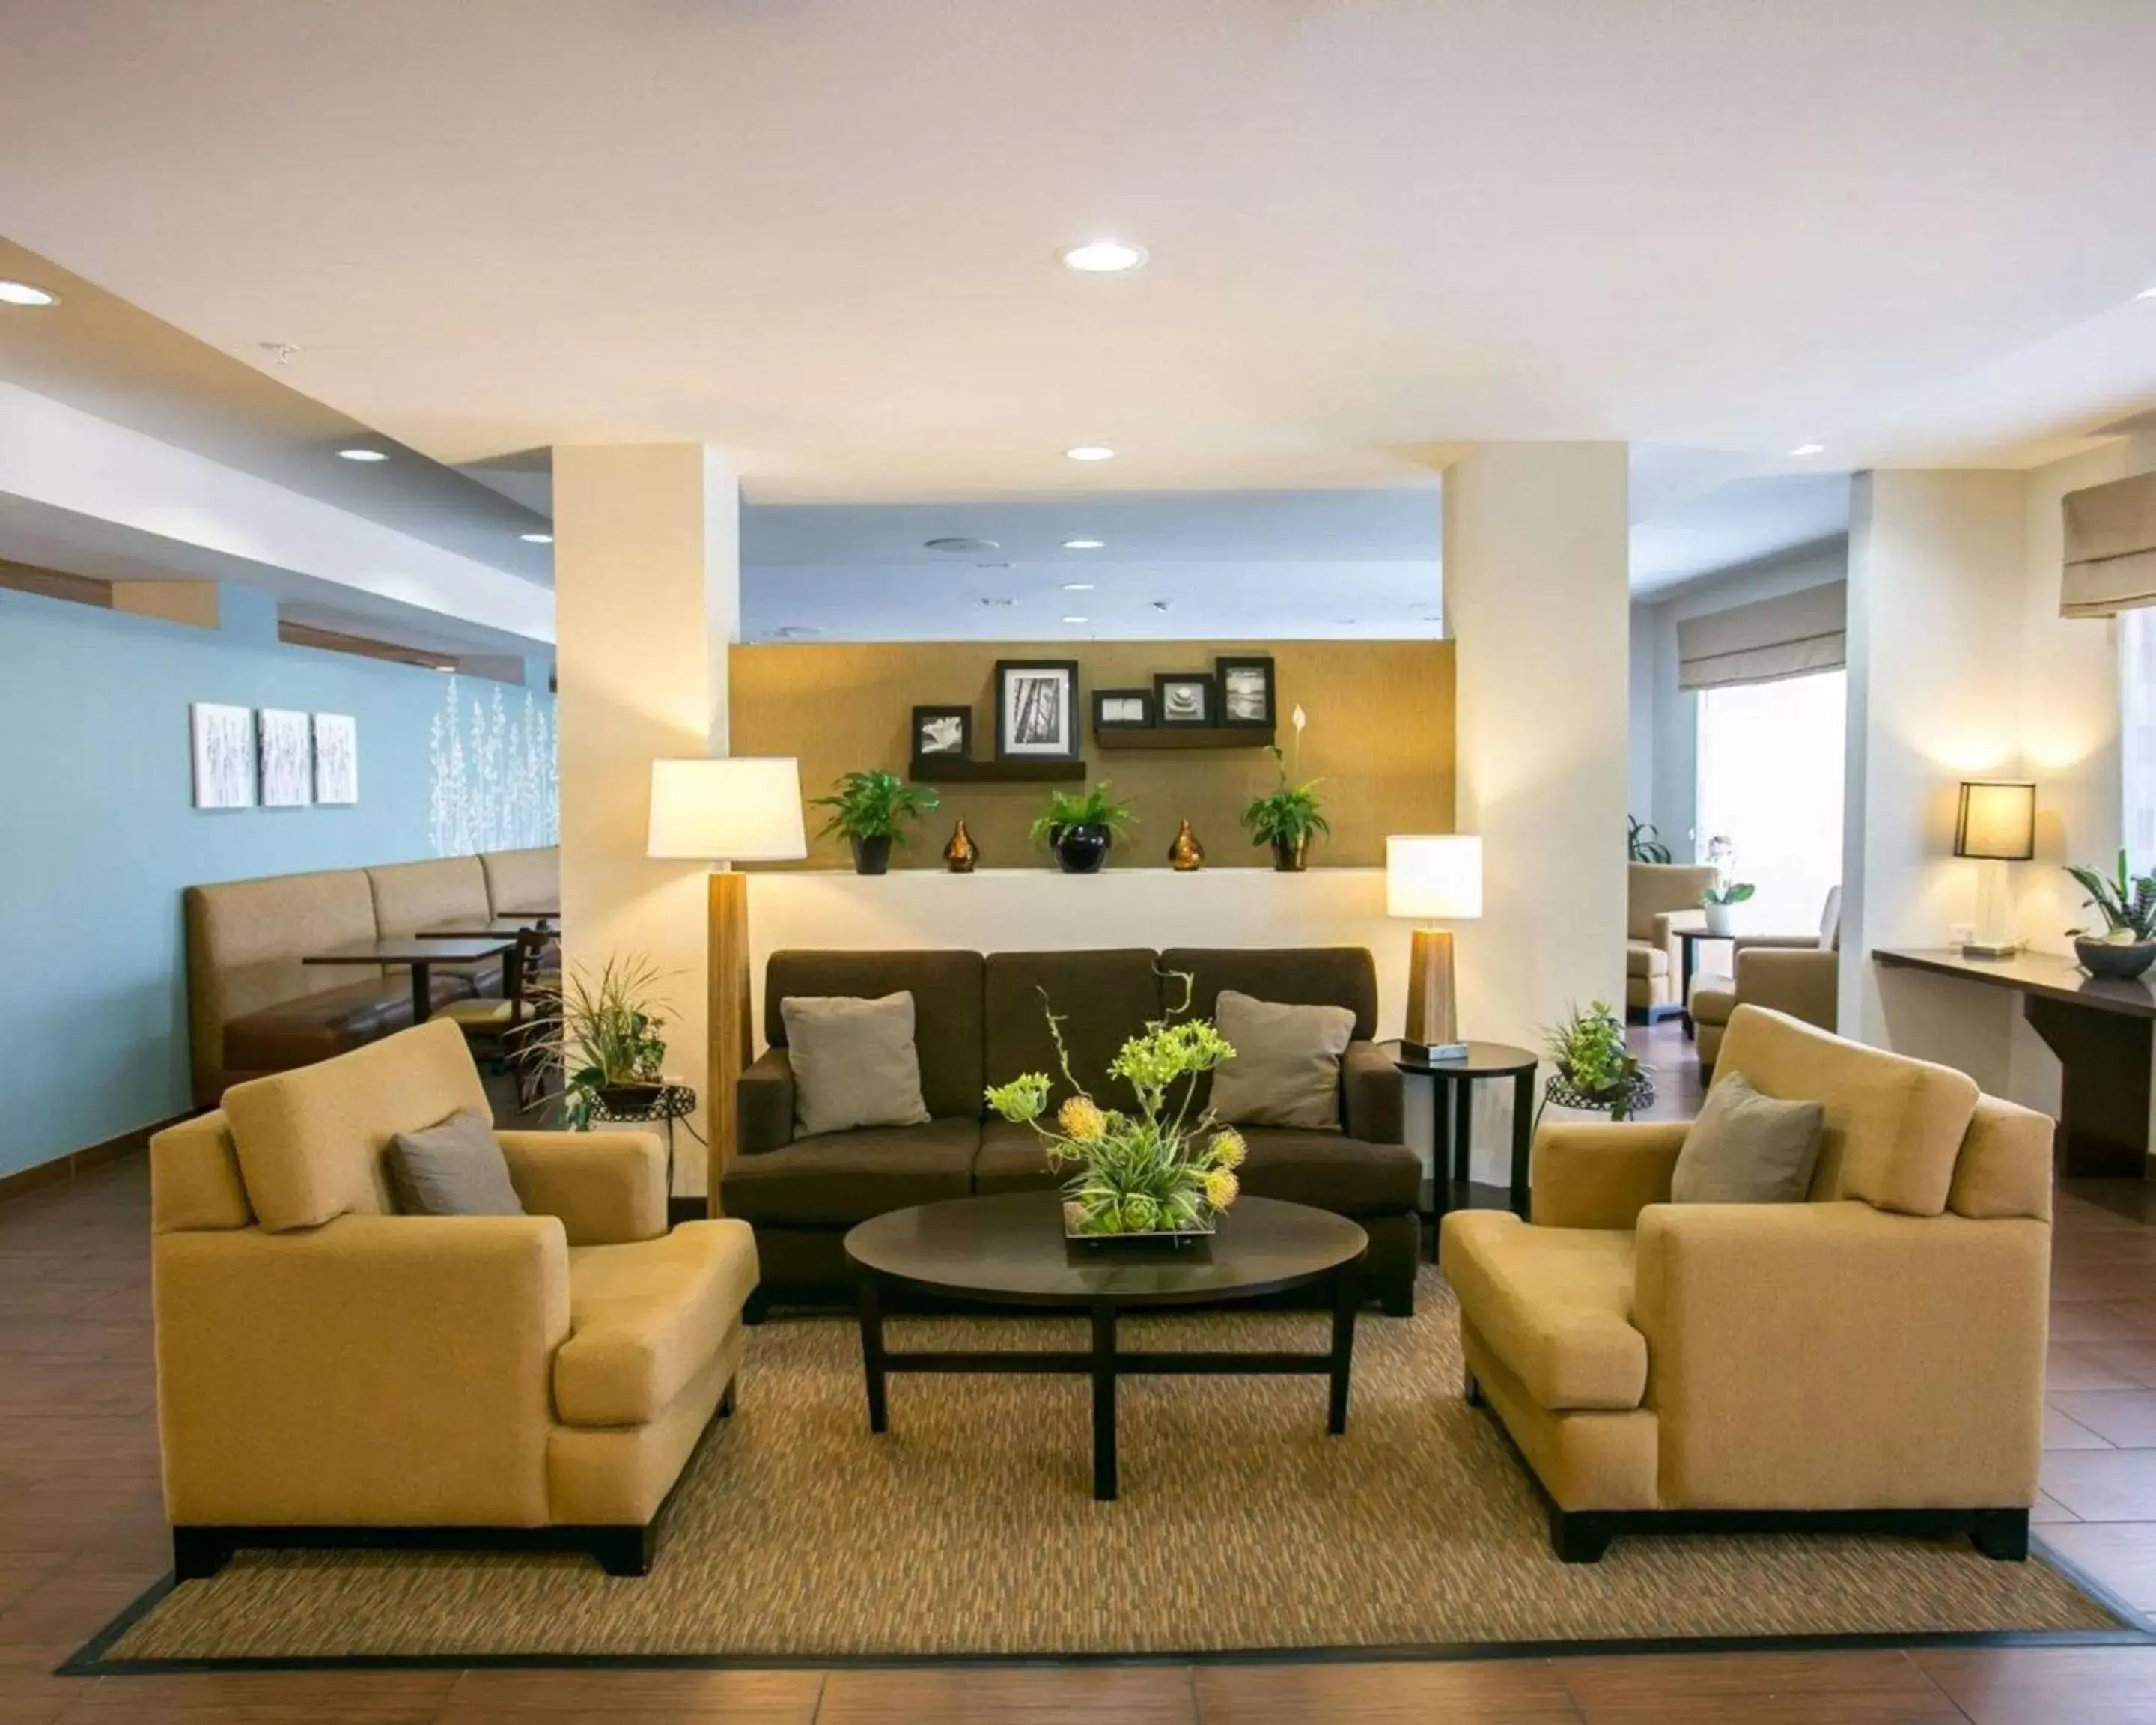 Lobby or reception, Lobby/Reception in Sleep Inn & Suites Austin